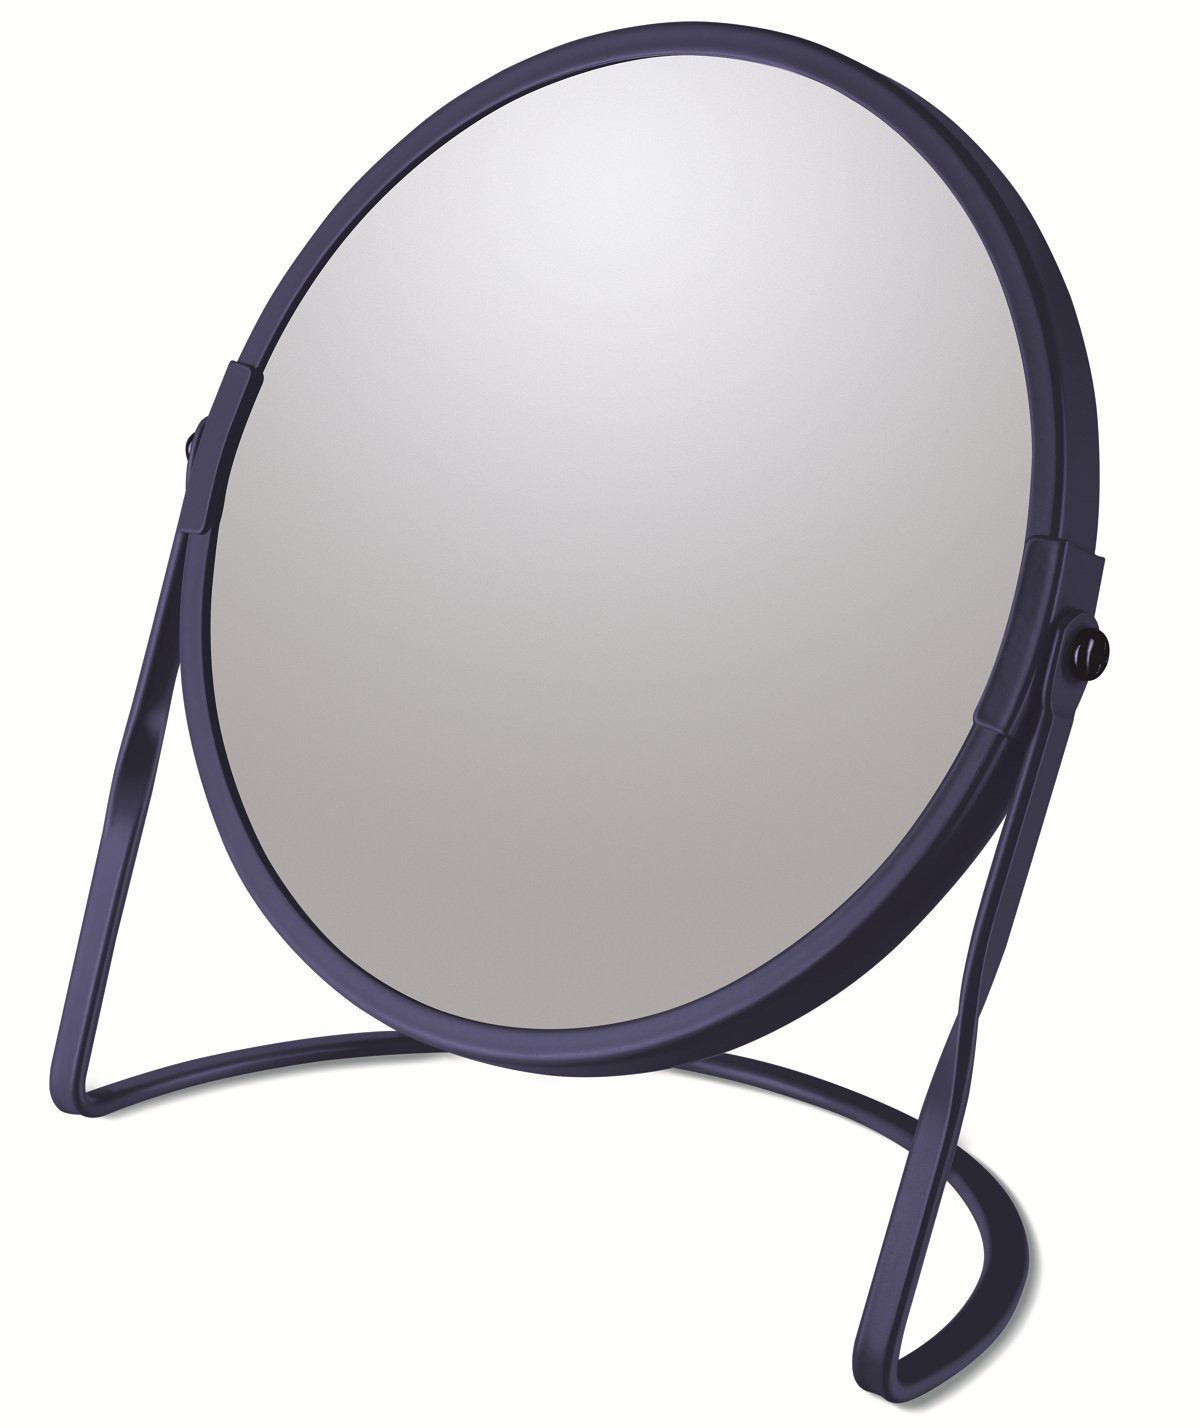 spirella Kosmetikspiegel AKIRA, 5-fache Vergrößerung, 2-seitig schwenkbar, matt-satiniert, Ø 17 cm